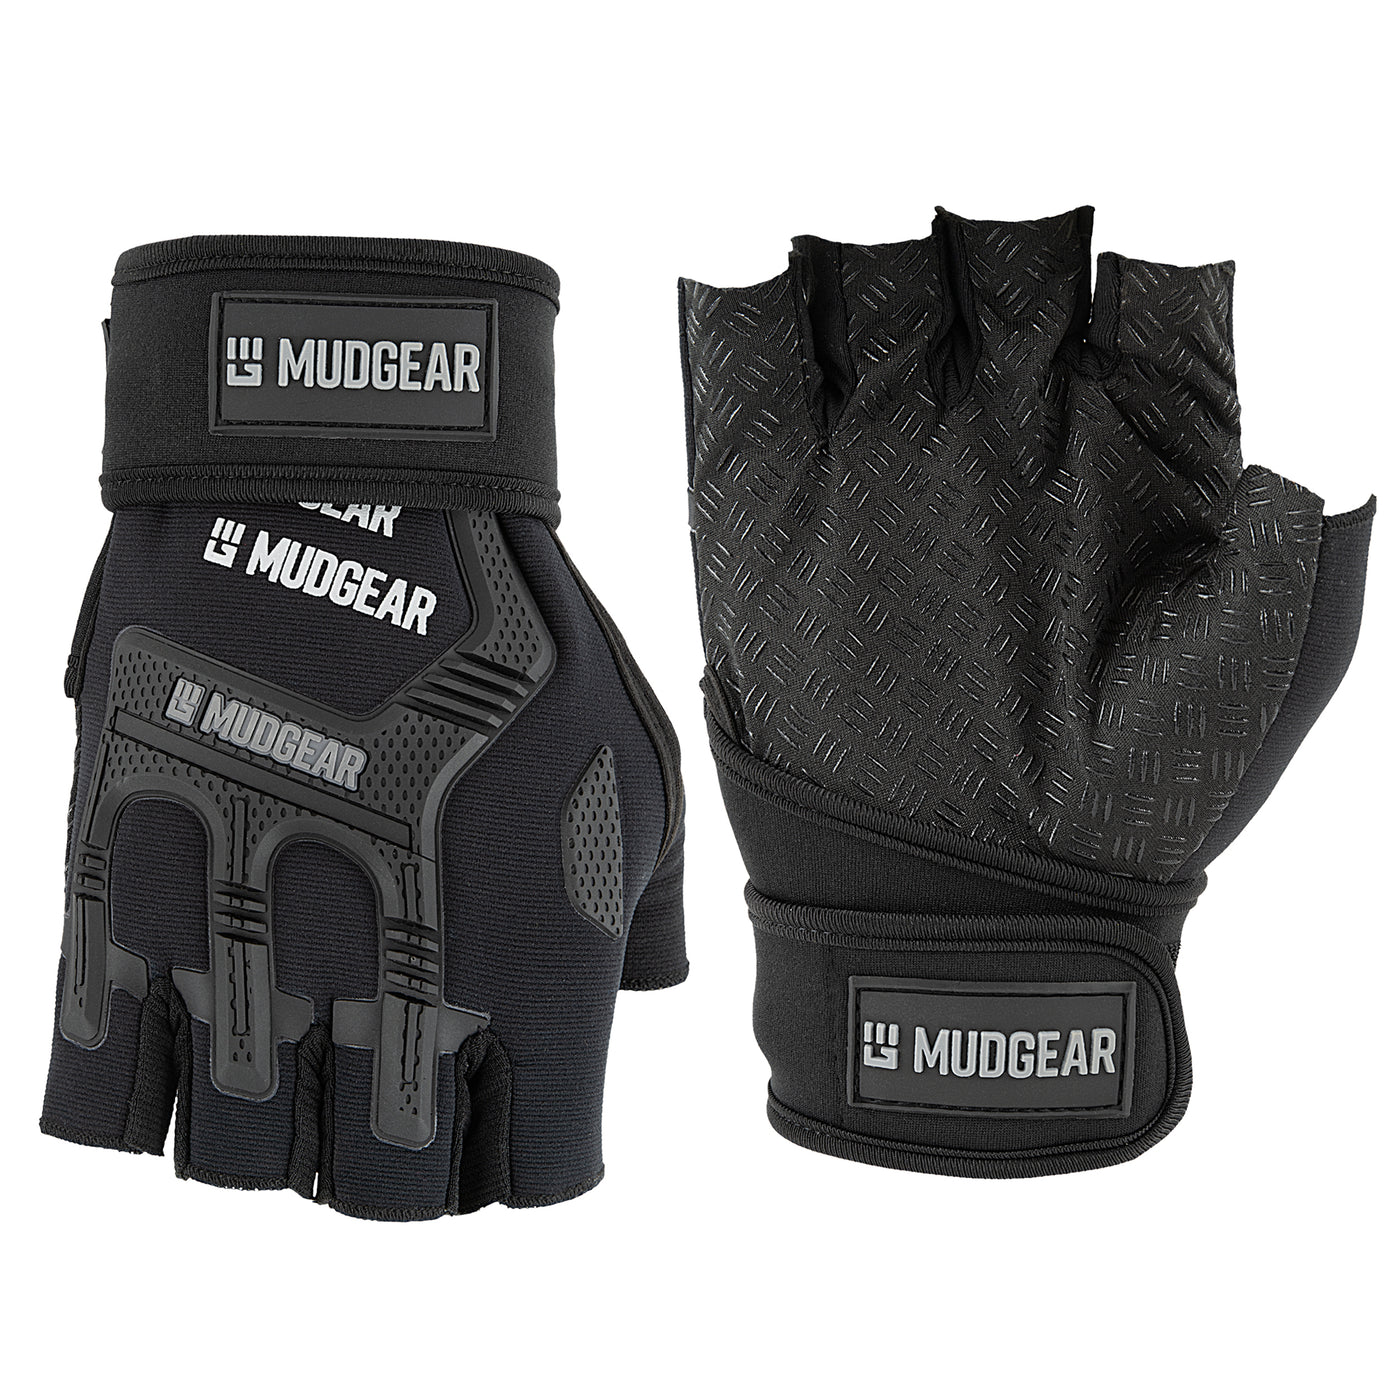 Mudgear maker of OCR gloves